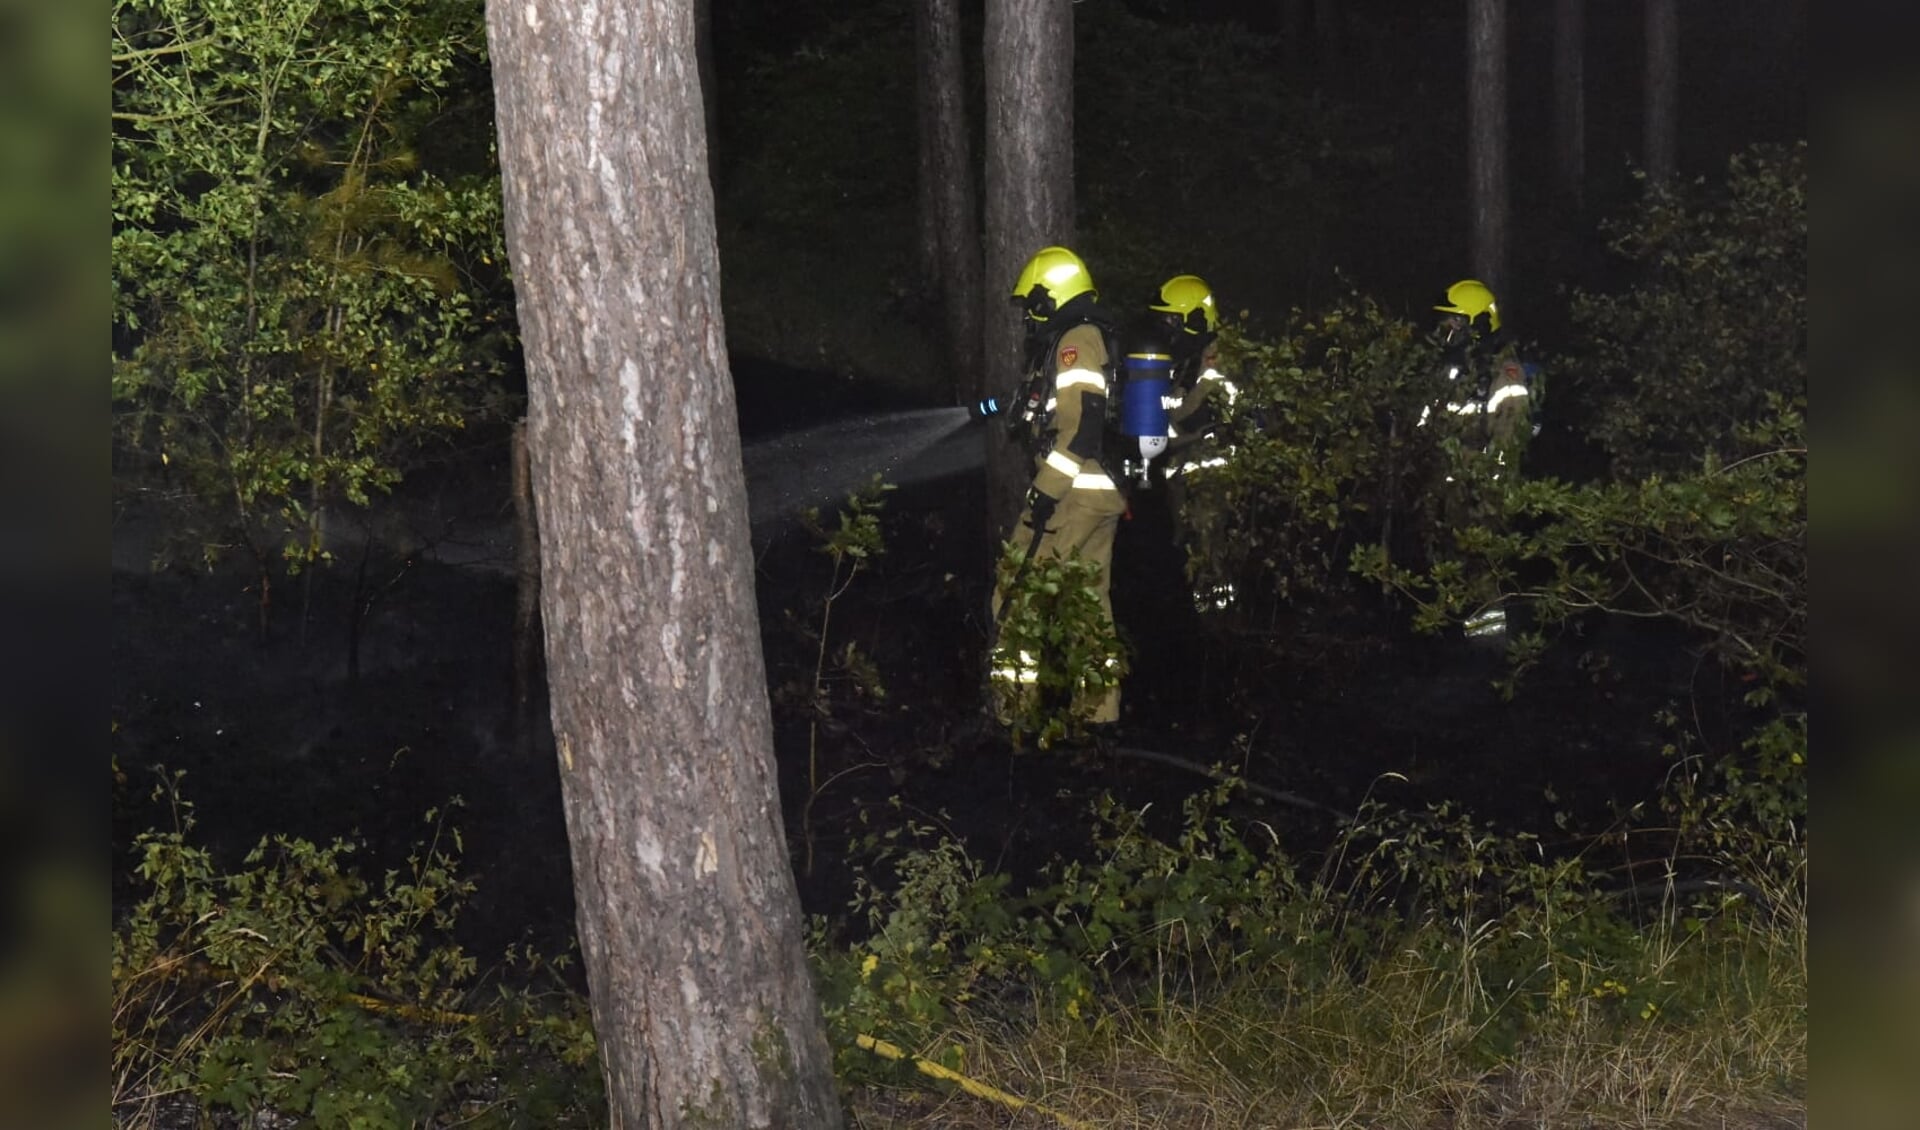 De brandweer bestrijdt het vuur in het bos.